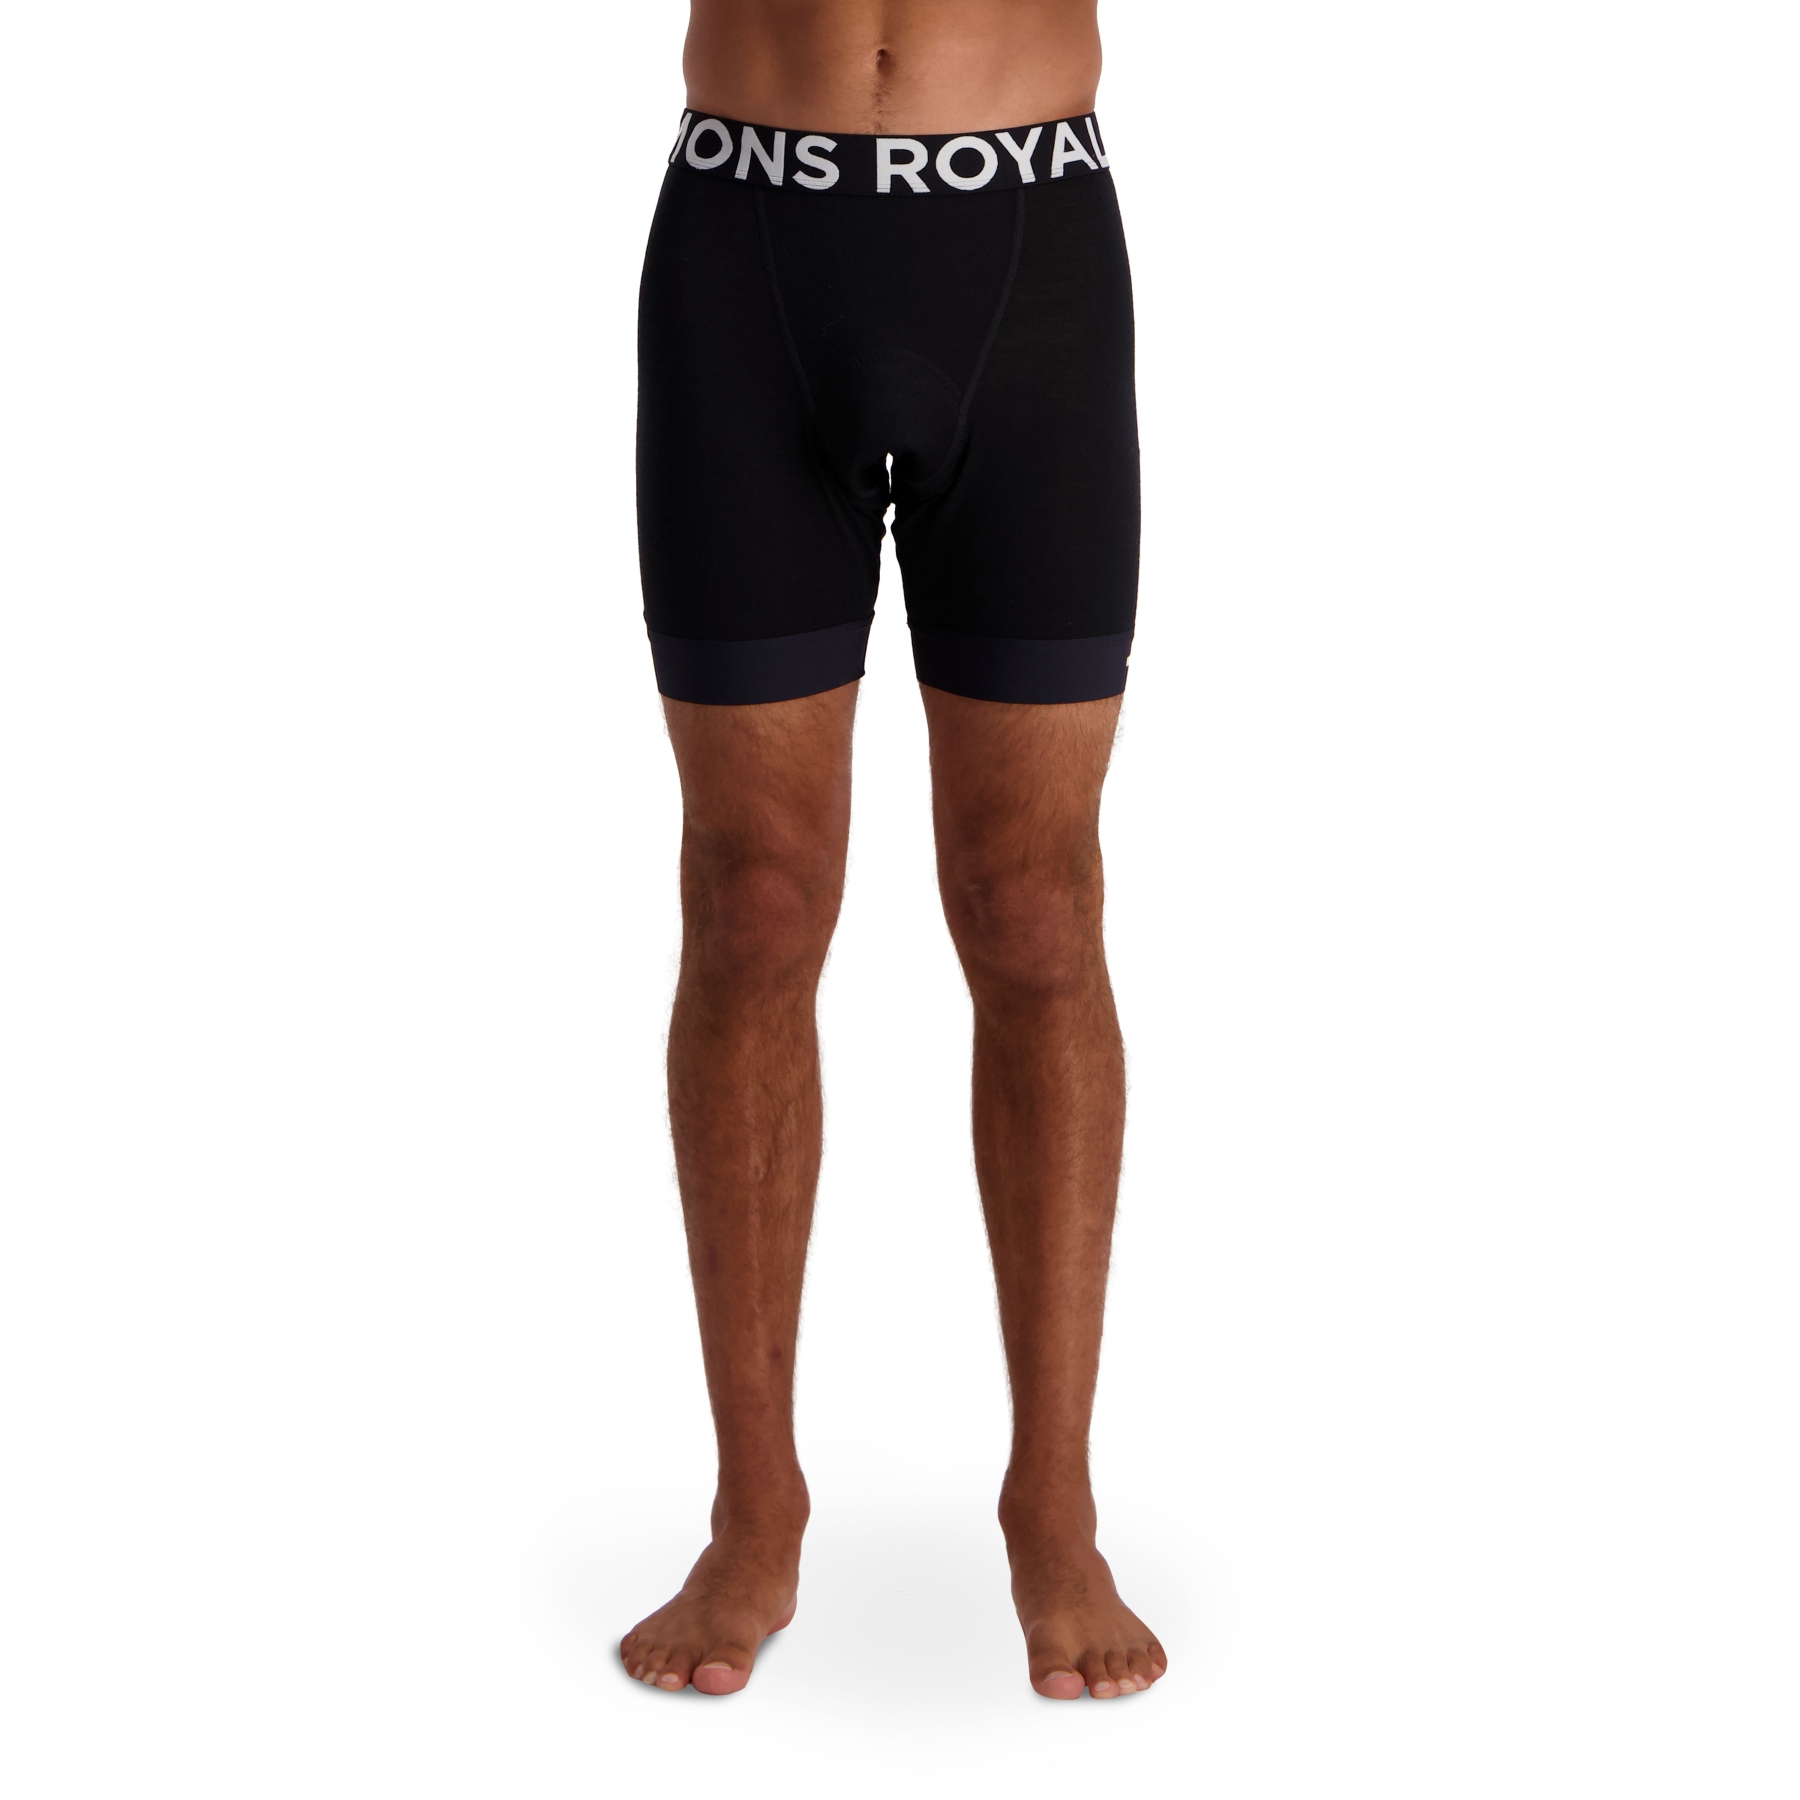 Produktbild von Mons Royale Enduro Bike Unterhose - schwarz